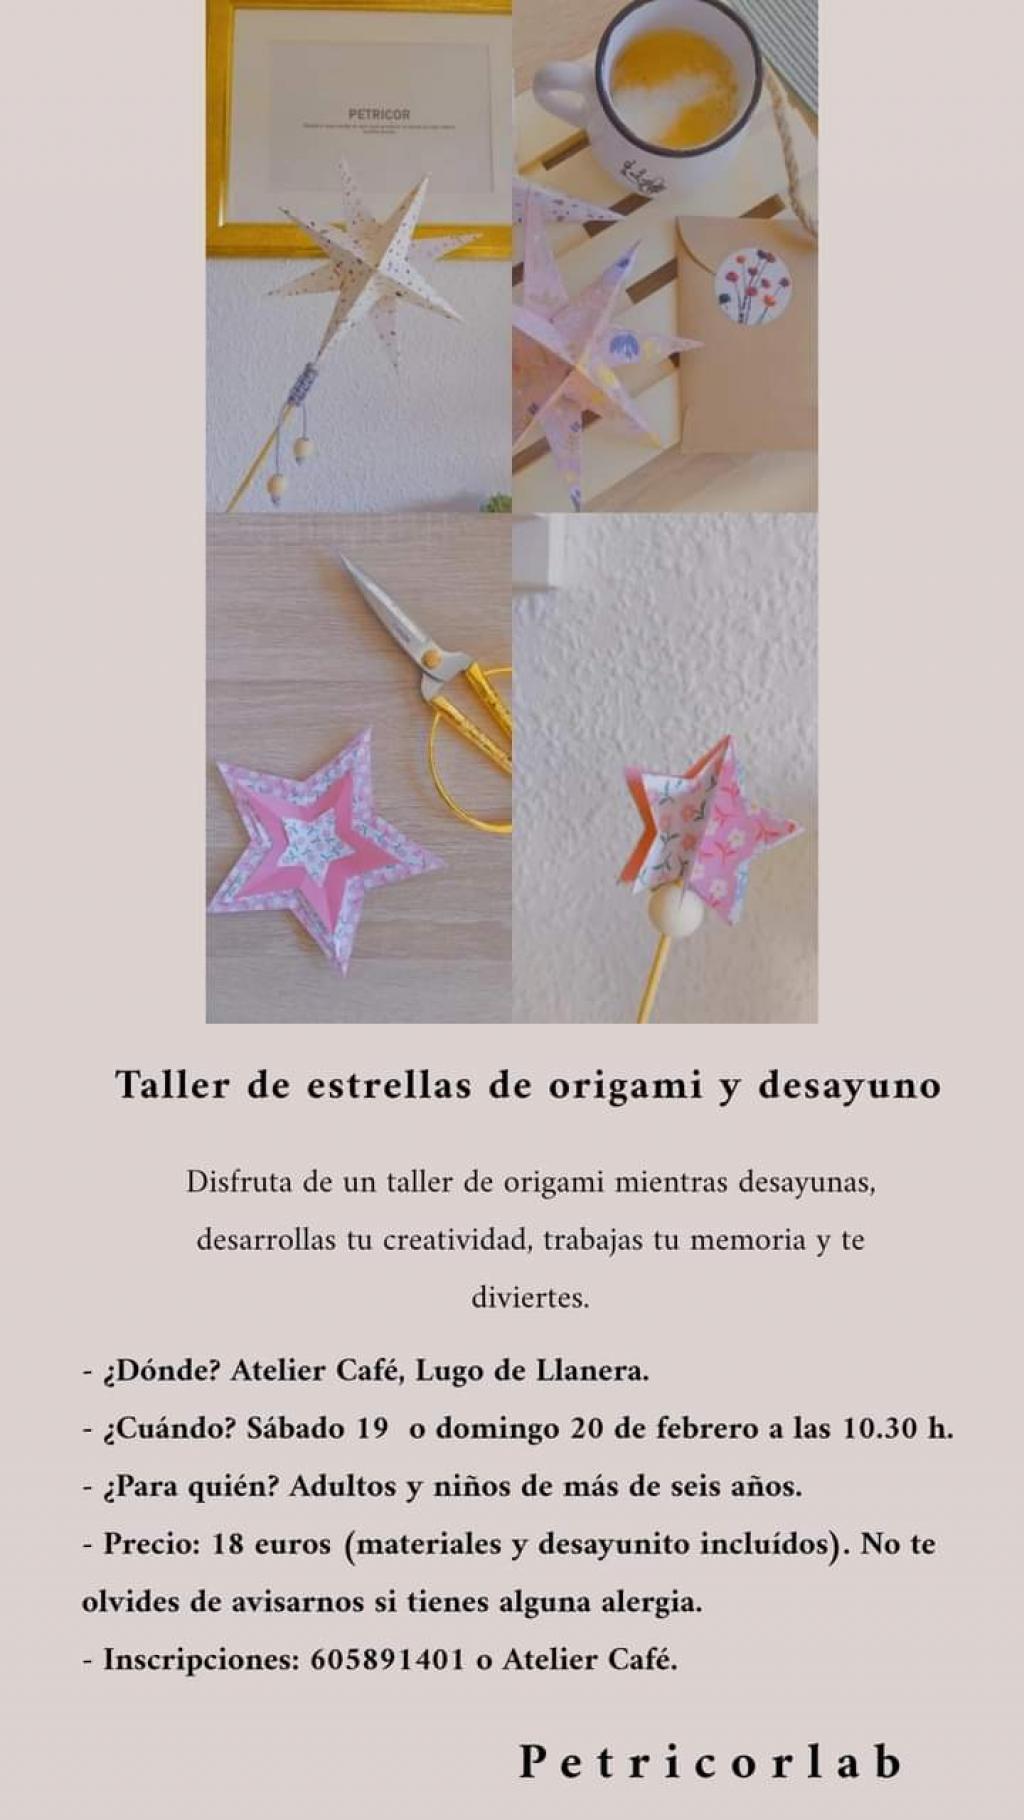 El Tapin - Petricorlab ofrece un Taller de Estrellas de Origami en el Atelier Caffé con desayuno